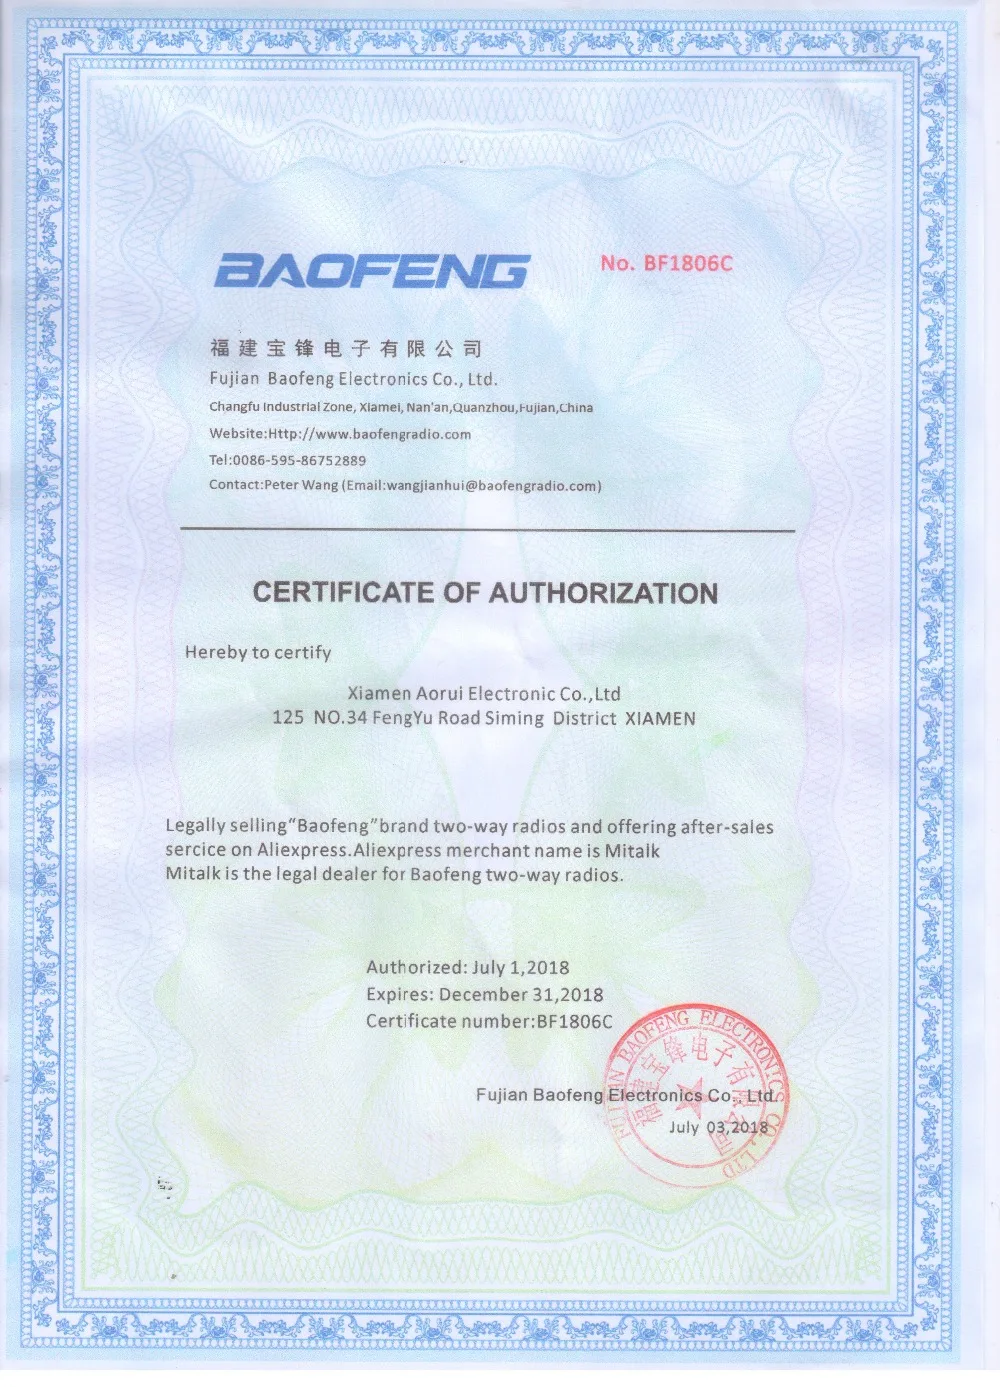 Baofeng DMR DM-1702(gps) портативная рация VHF UHF двухдиапазонный 136-174 и 400-470 МГц Dual Time слот Tier 1& 2 цифровое радио